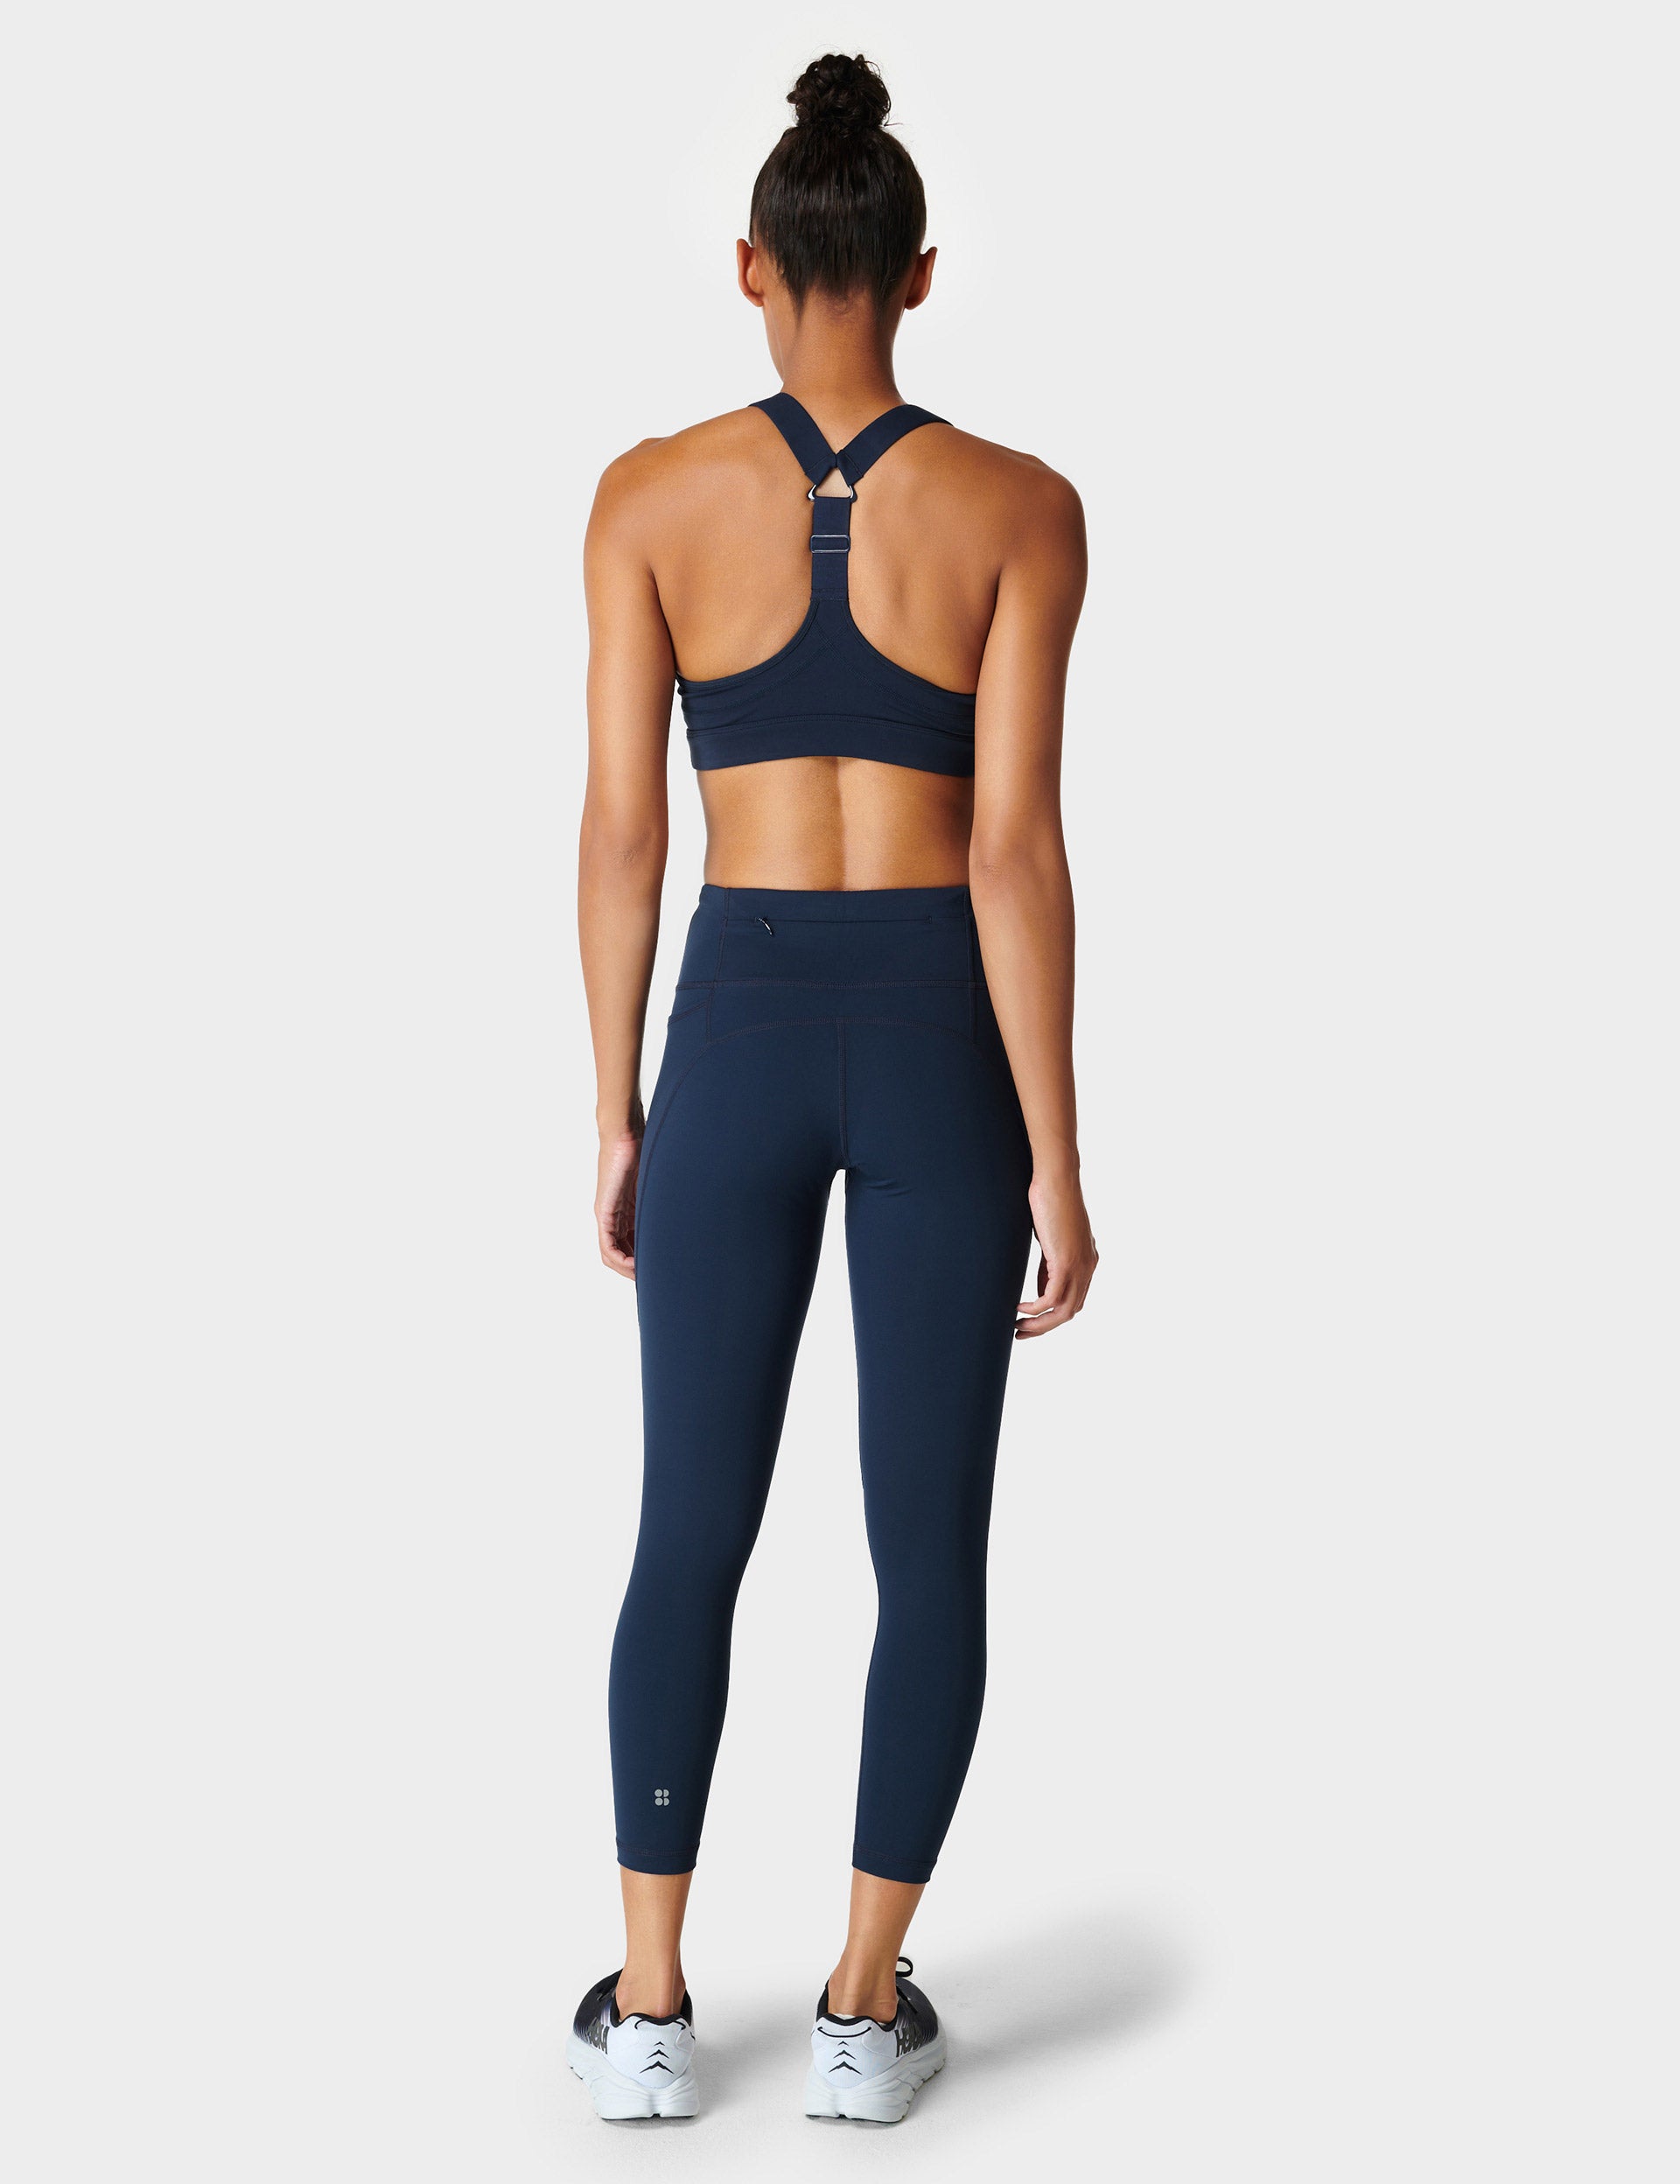 Women's Gym Leggings - Black - Navy blue, Dark blue - Starever